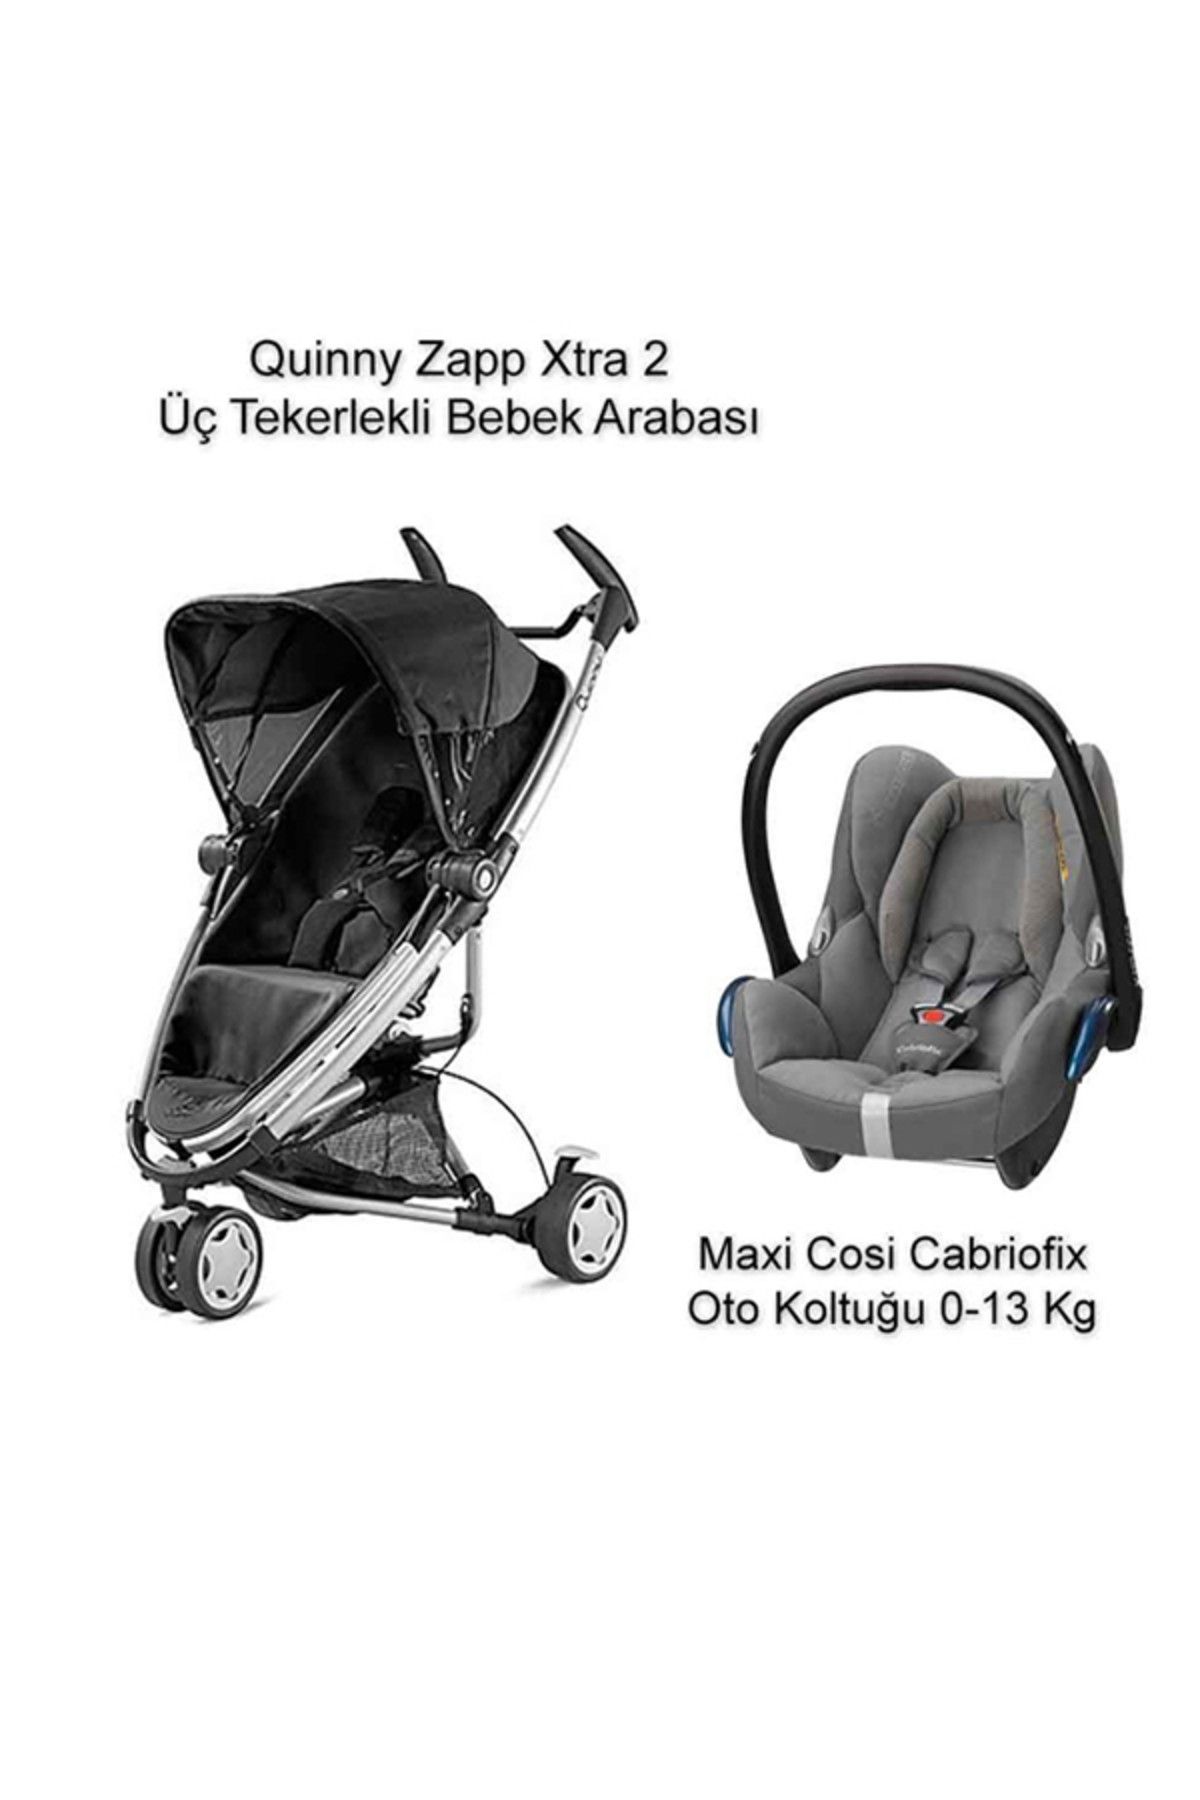 Quinny Zapp Xtra 2+Cabriofix Kampanyası Concrete Grey /